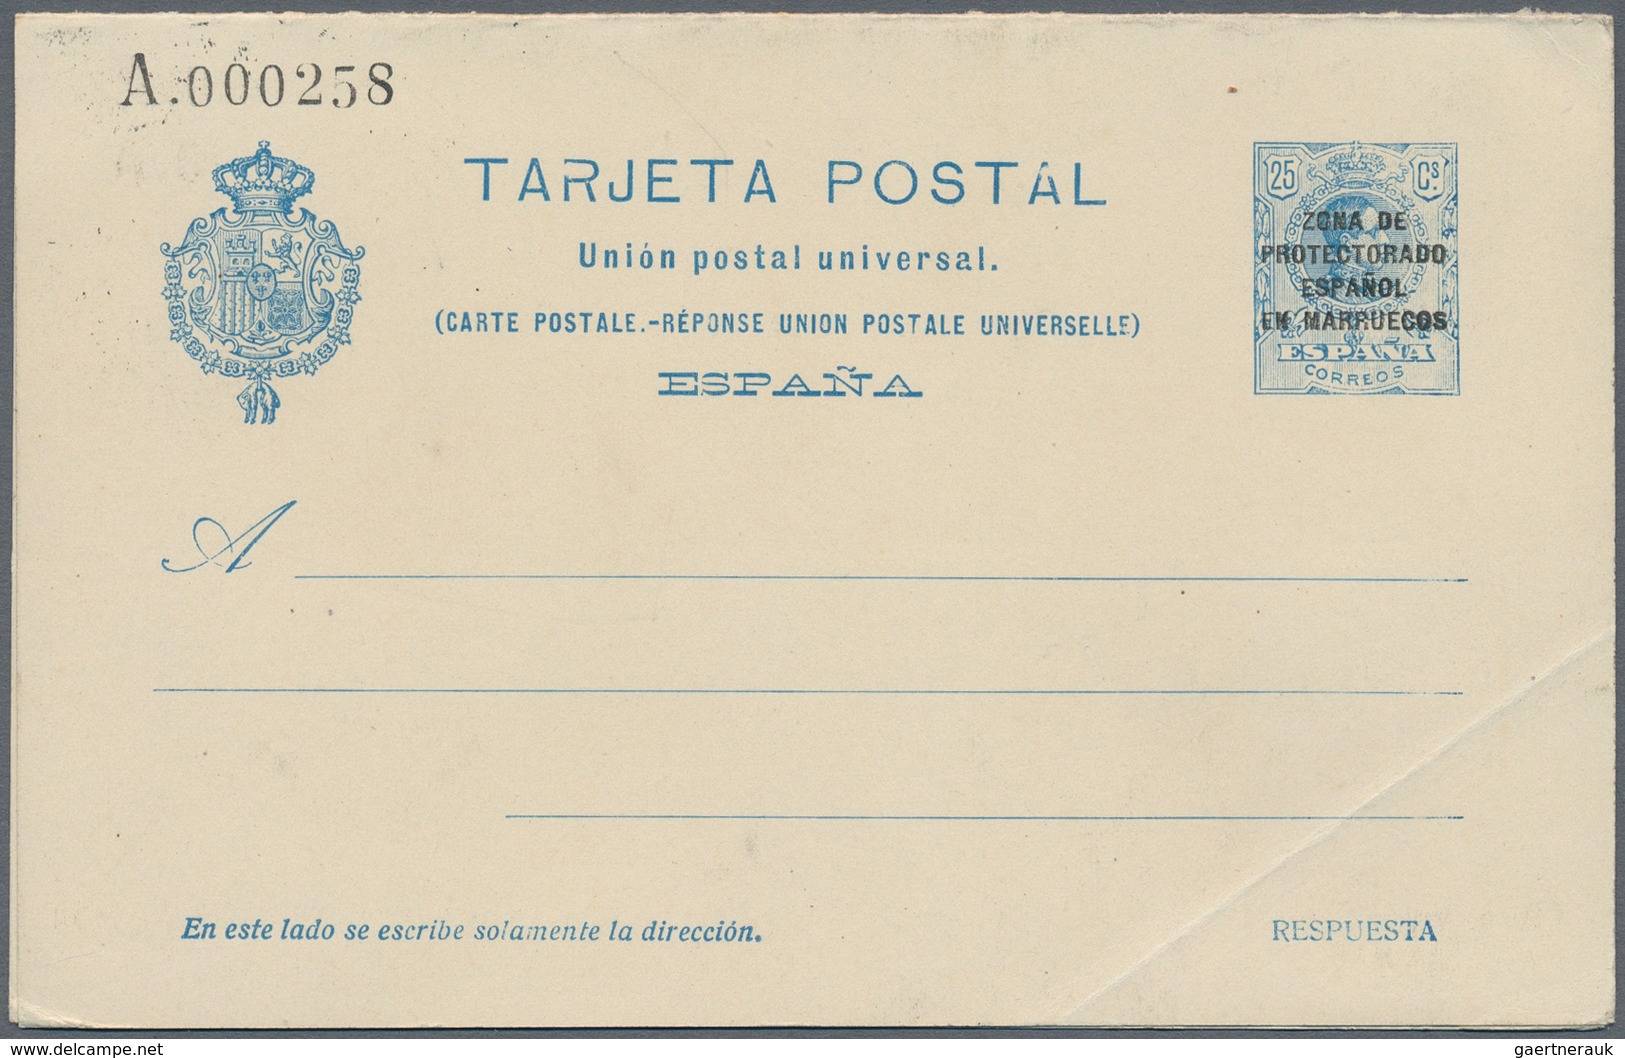 Spanien - Ganzsachen: 1926. Lot of 4 postcards Alfonso XIII Medallón "Zona de Protectorado Espanol e